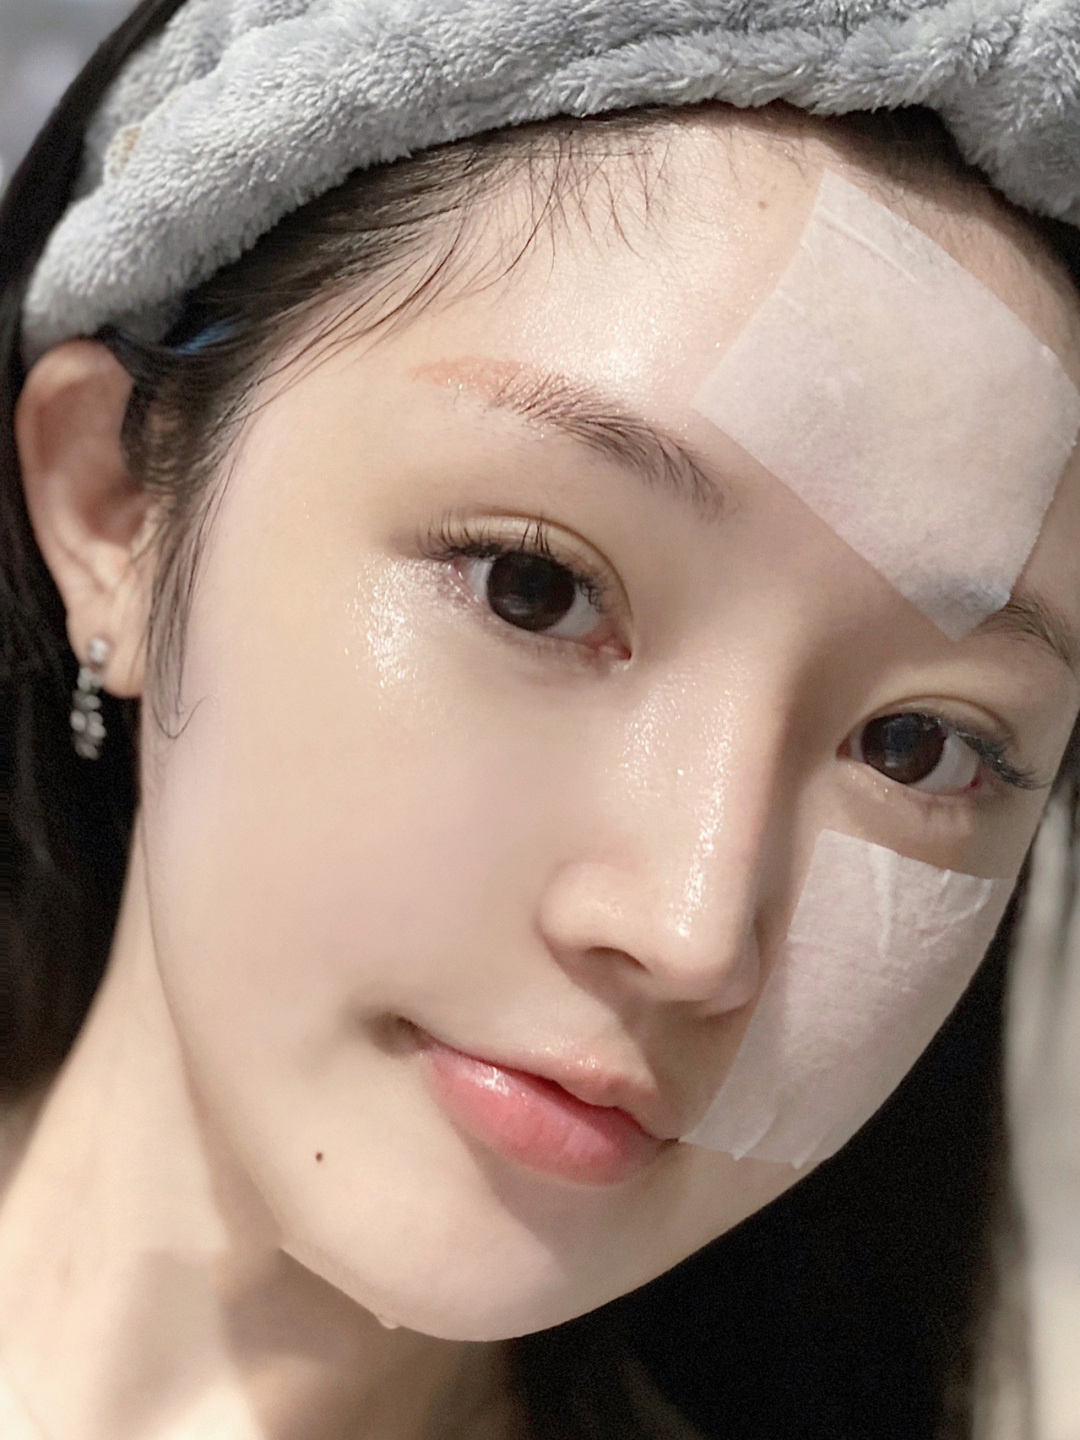 Đắp lotion mask như 1 bước đệm làm ẩm da, nhưng nhiều người vẫn mắc 2 lỗi này khiến da chẳng nhận được tí dưỡng chất nào - Ảnh 1.